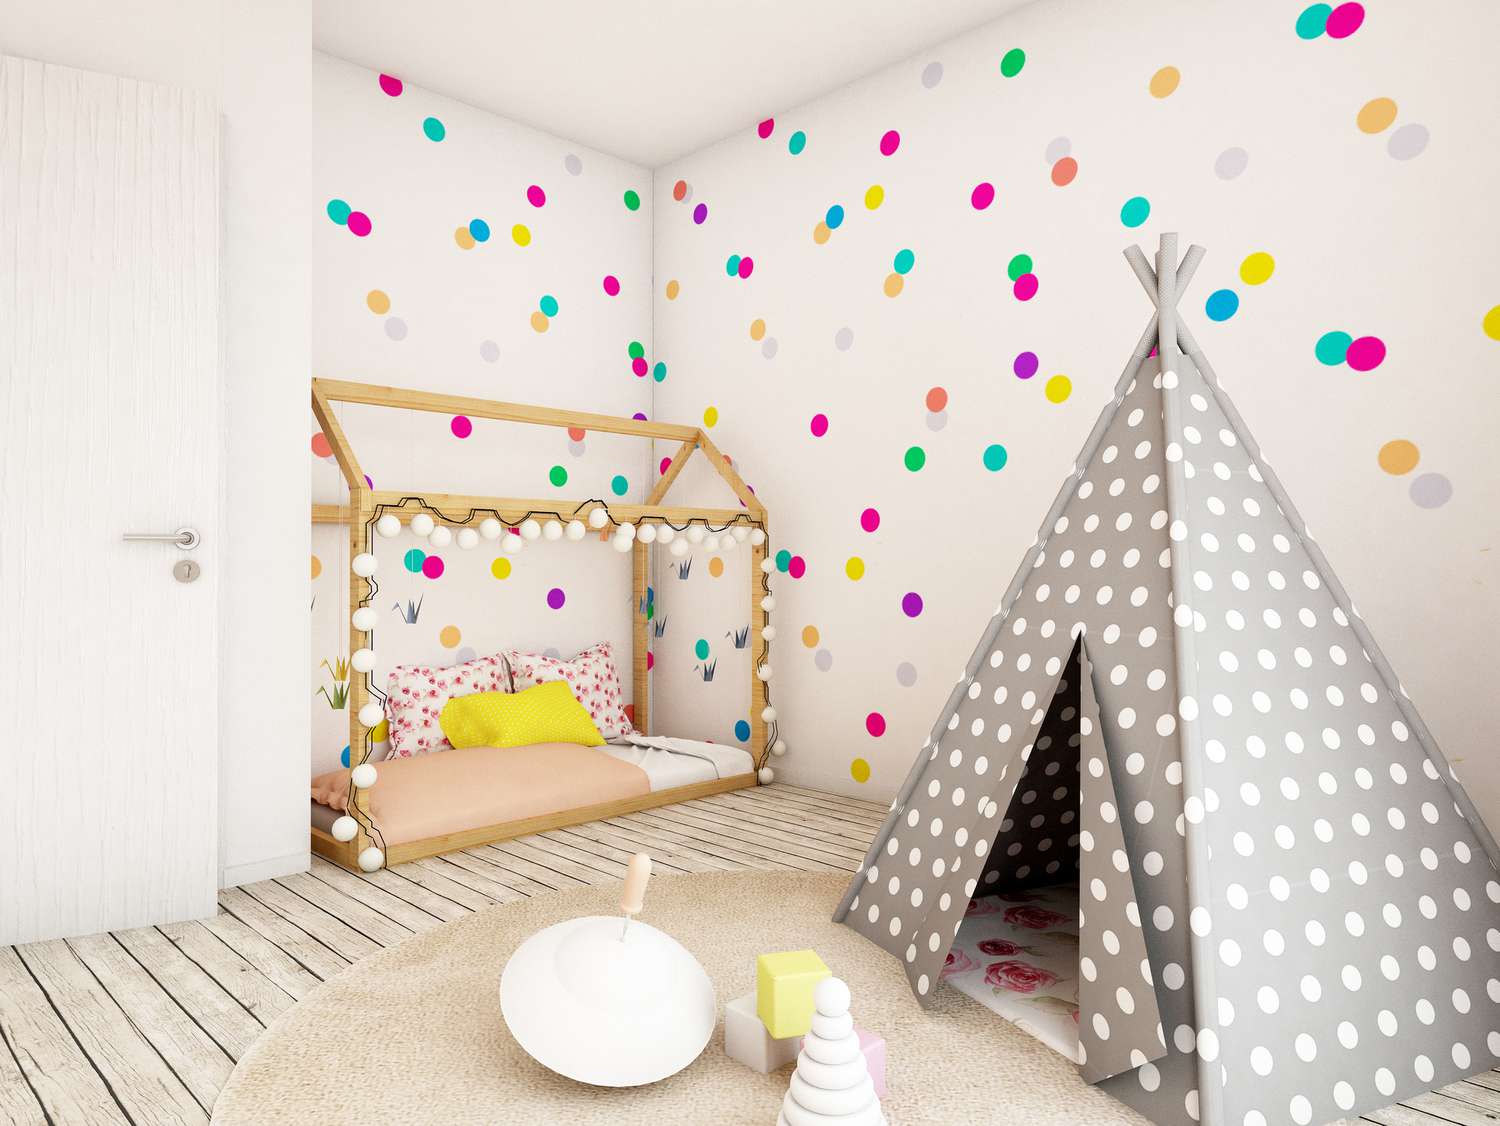 Papel de parede brilhante de bolinhas em um quarto de criança.